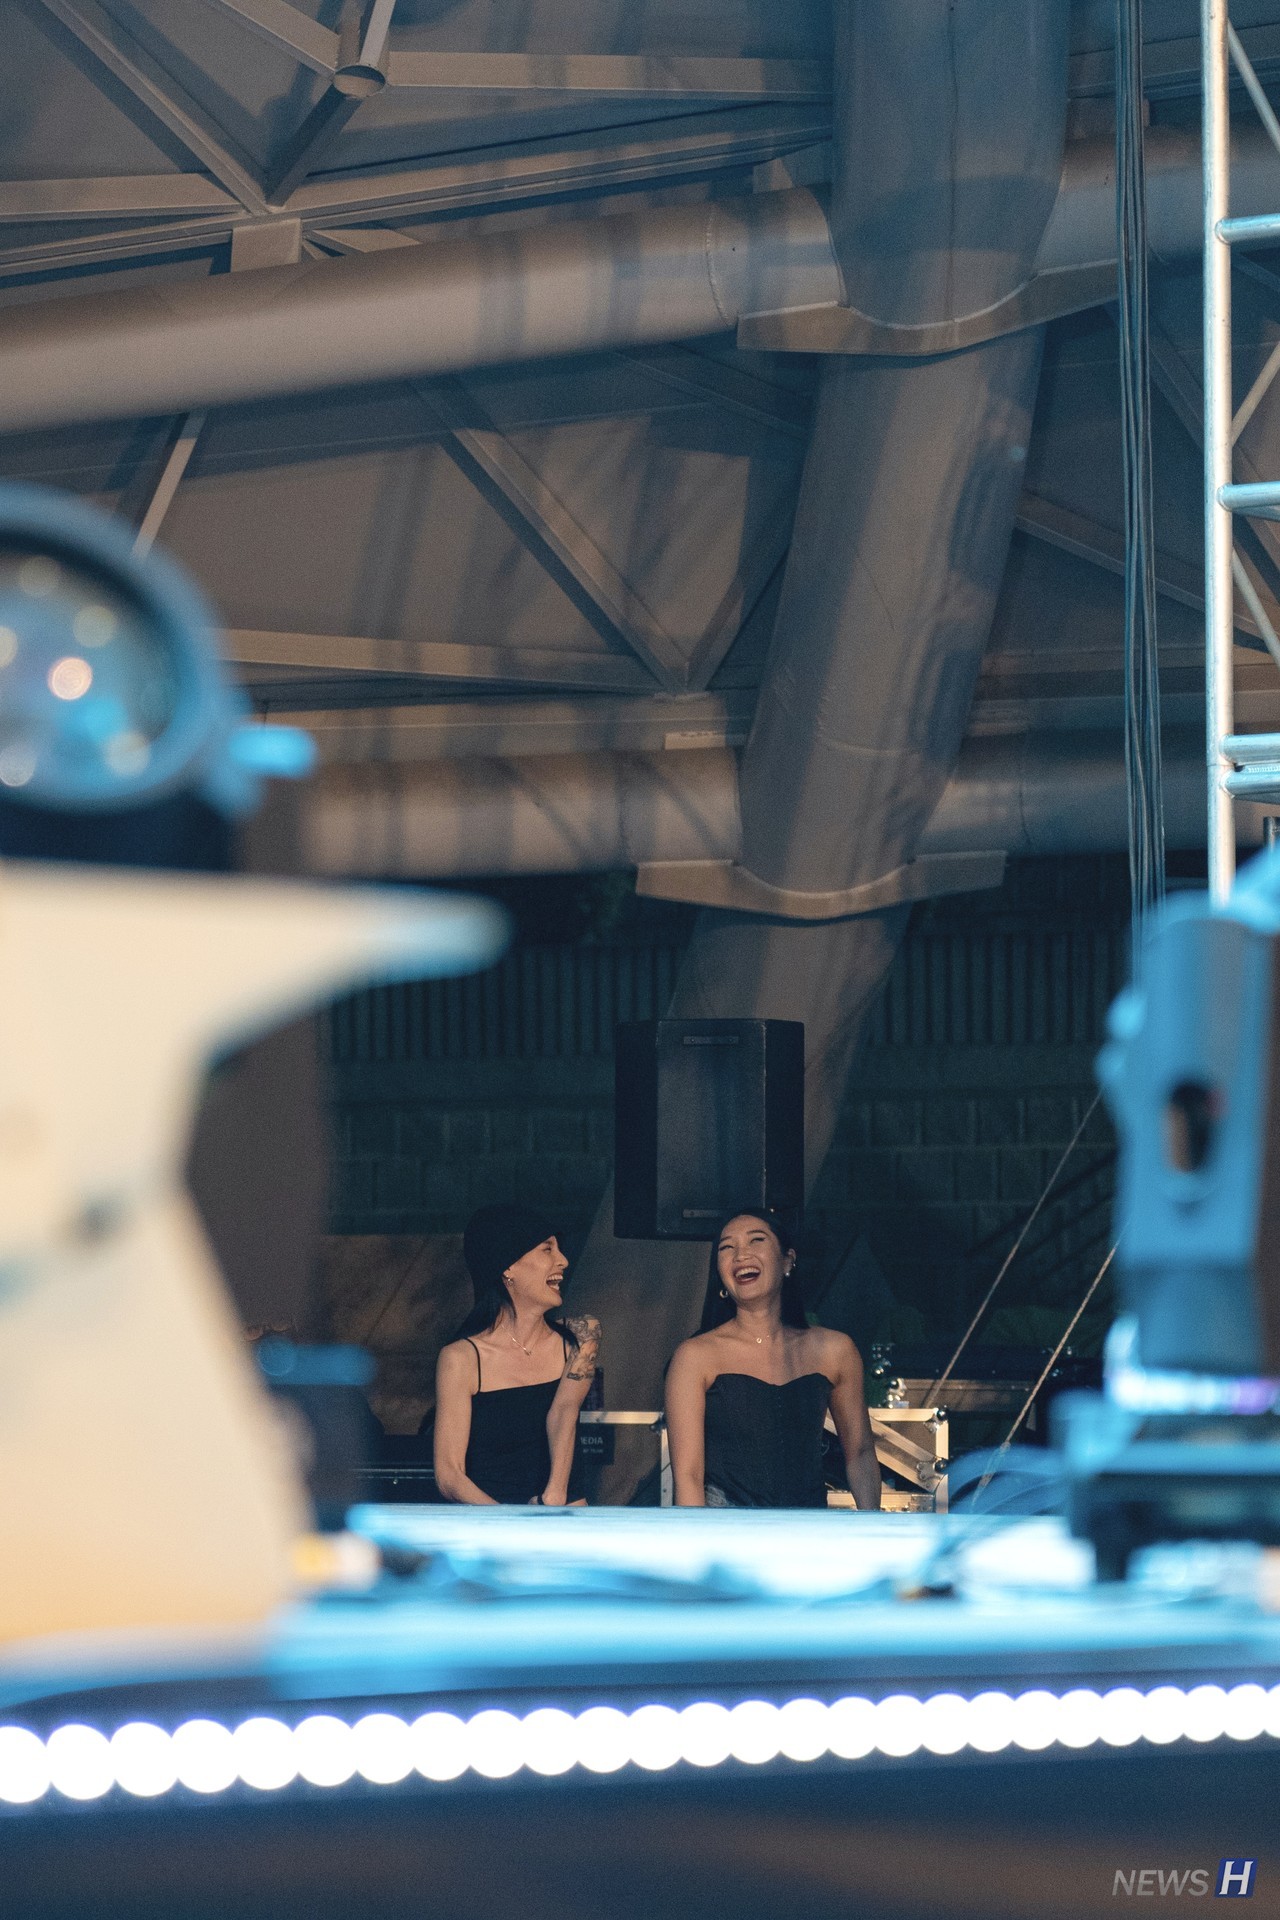 ▲ 다이나믹 듀요 무대의 특별 게스트로는 Mnet '스트릿 우먼 파이터'로 이름을 알린 댄서 모니카(왼쪽)와 립제이(오른쪽)가 함께했다. 무대에 오르기 직전 백스테이지에서 공연을 즐기고 있다. 